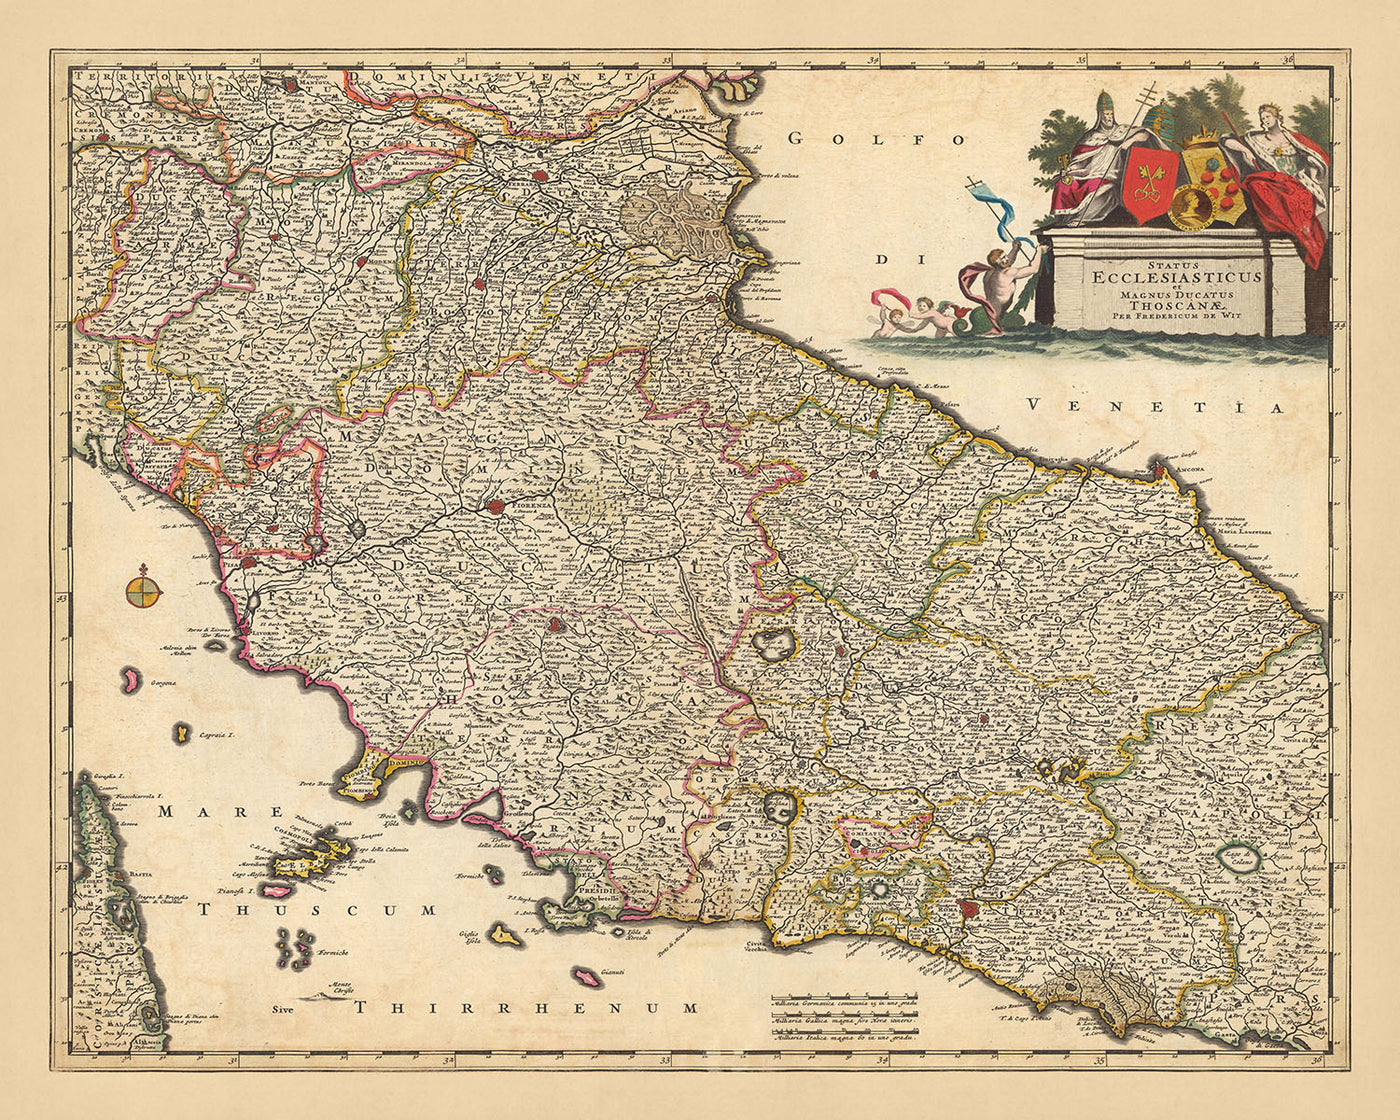 Mapa antiguo del Estado Pontificio y Ducado de Toscana, Italia por Visscher, 1690: Roma, Florencia, Pescara, Bolonia, Pisa